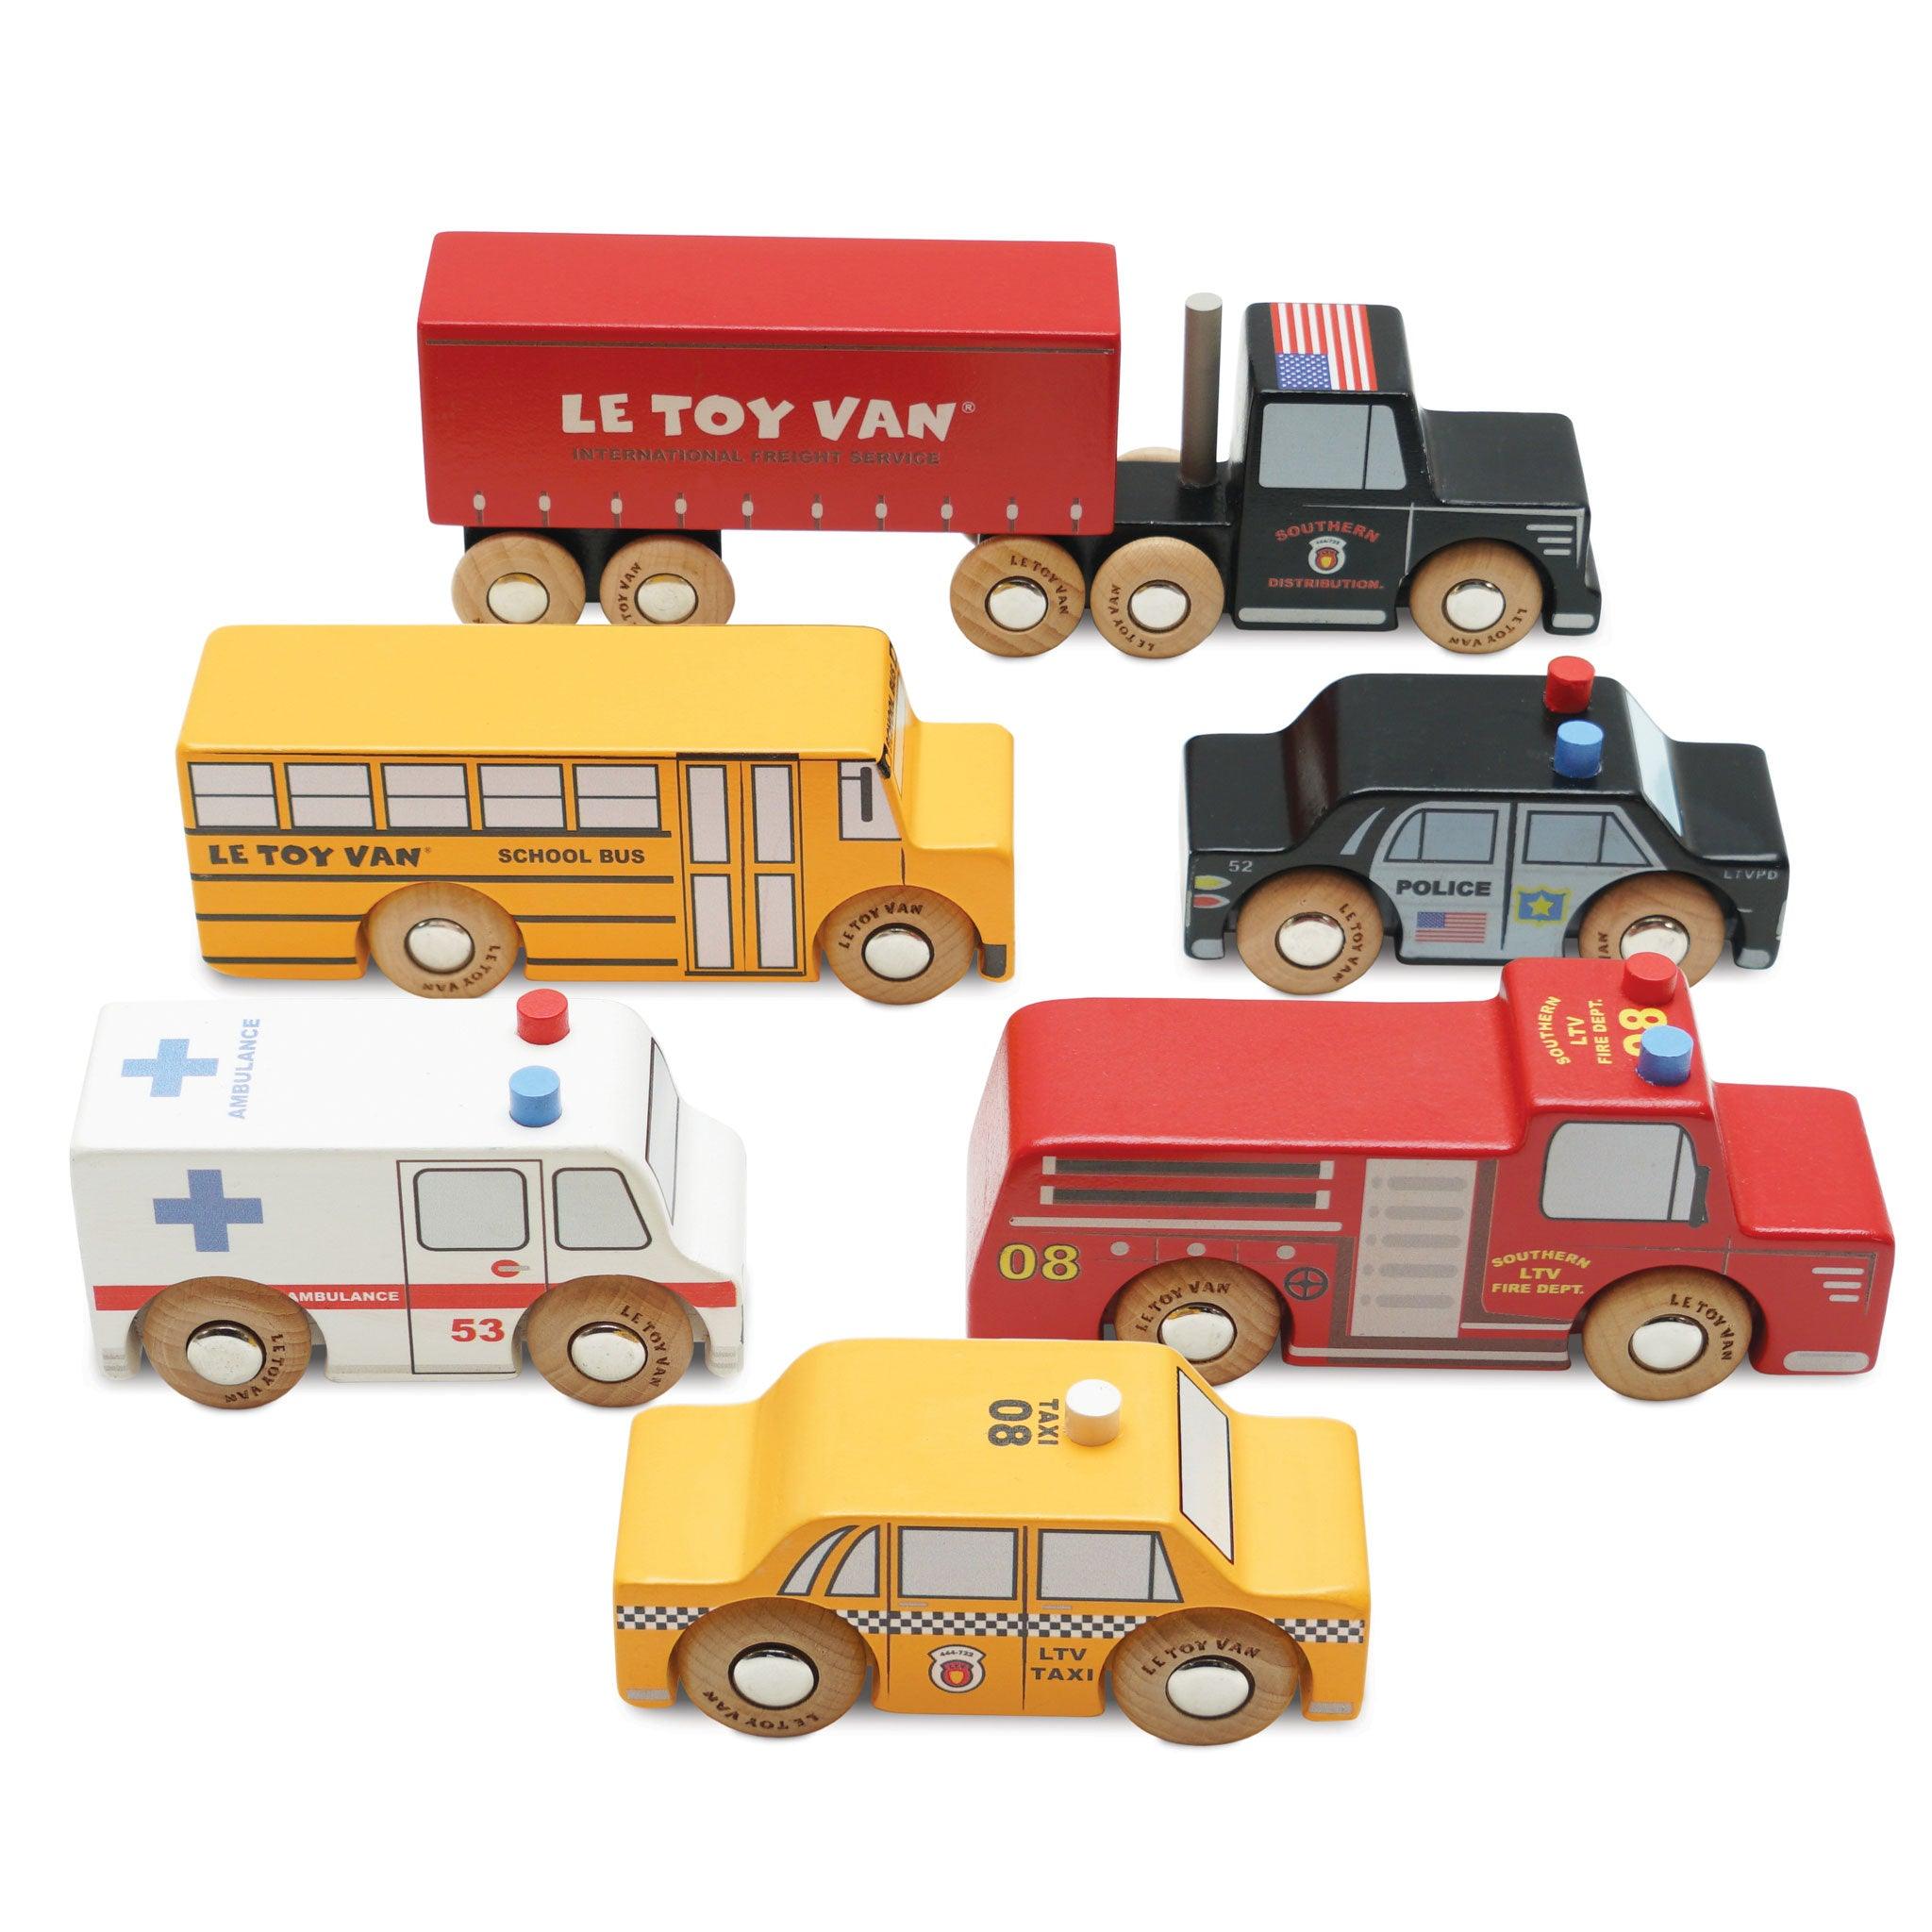 Le Toy Van New York Set of Wooden Cars - Taylorson